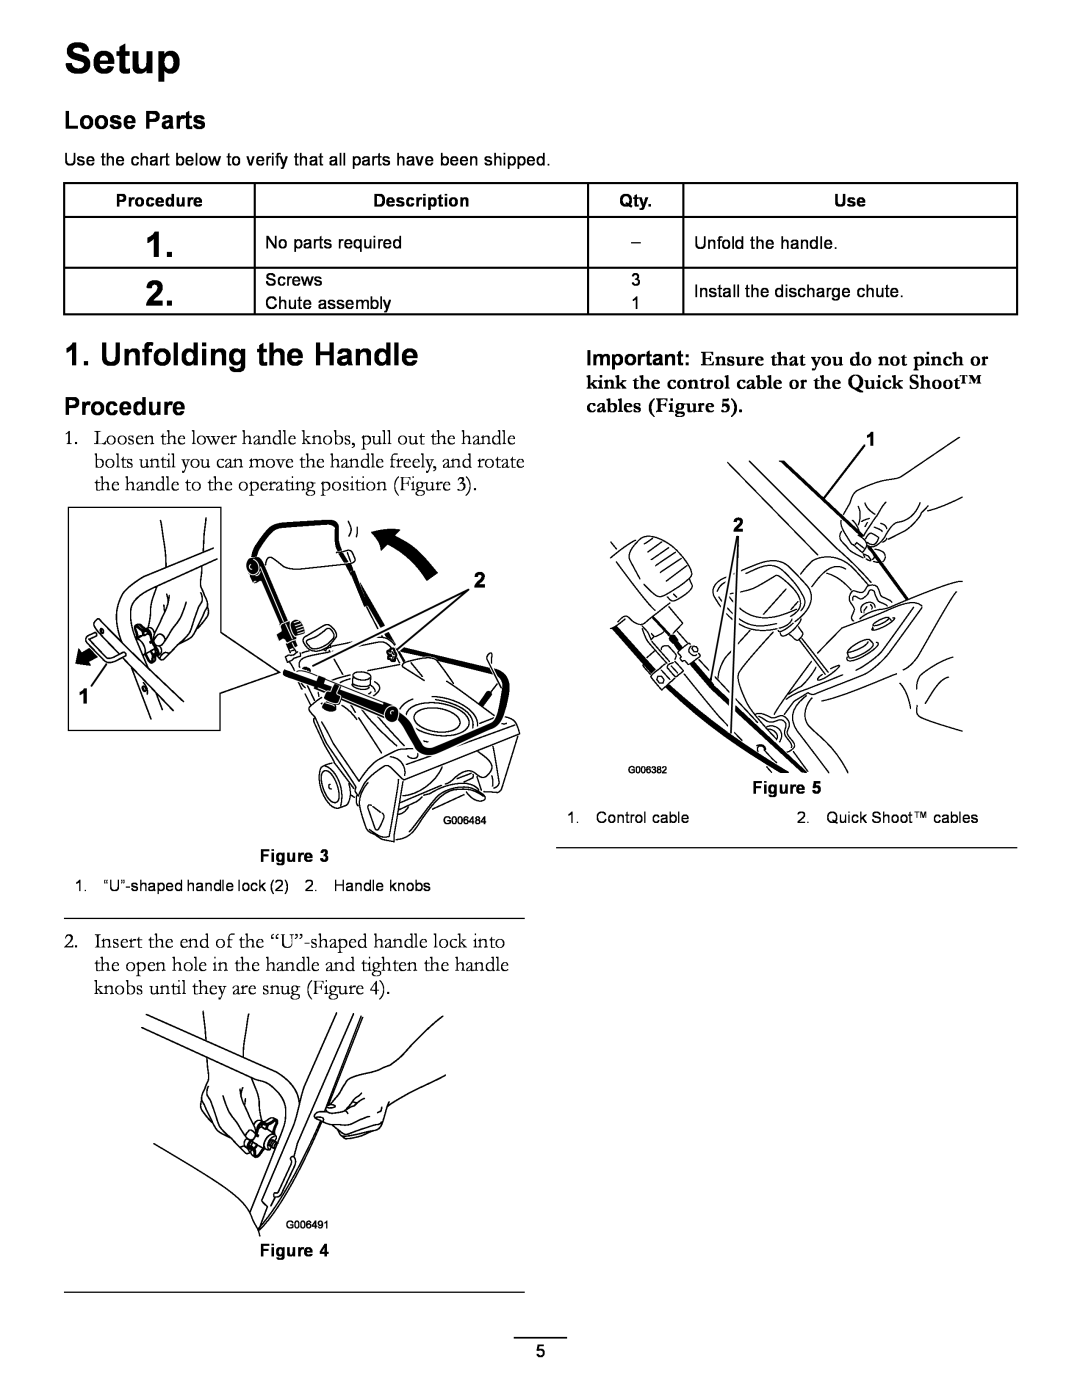 Toro 38583, 38584 owner manual Setup, Unfolding the Handle, Loose Parts, Procedure, Description 